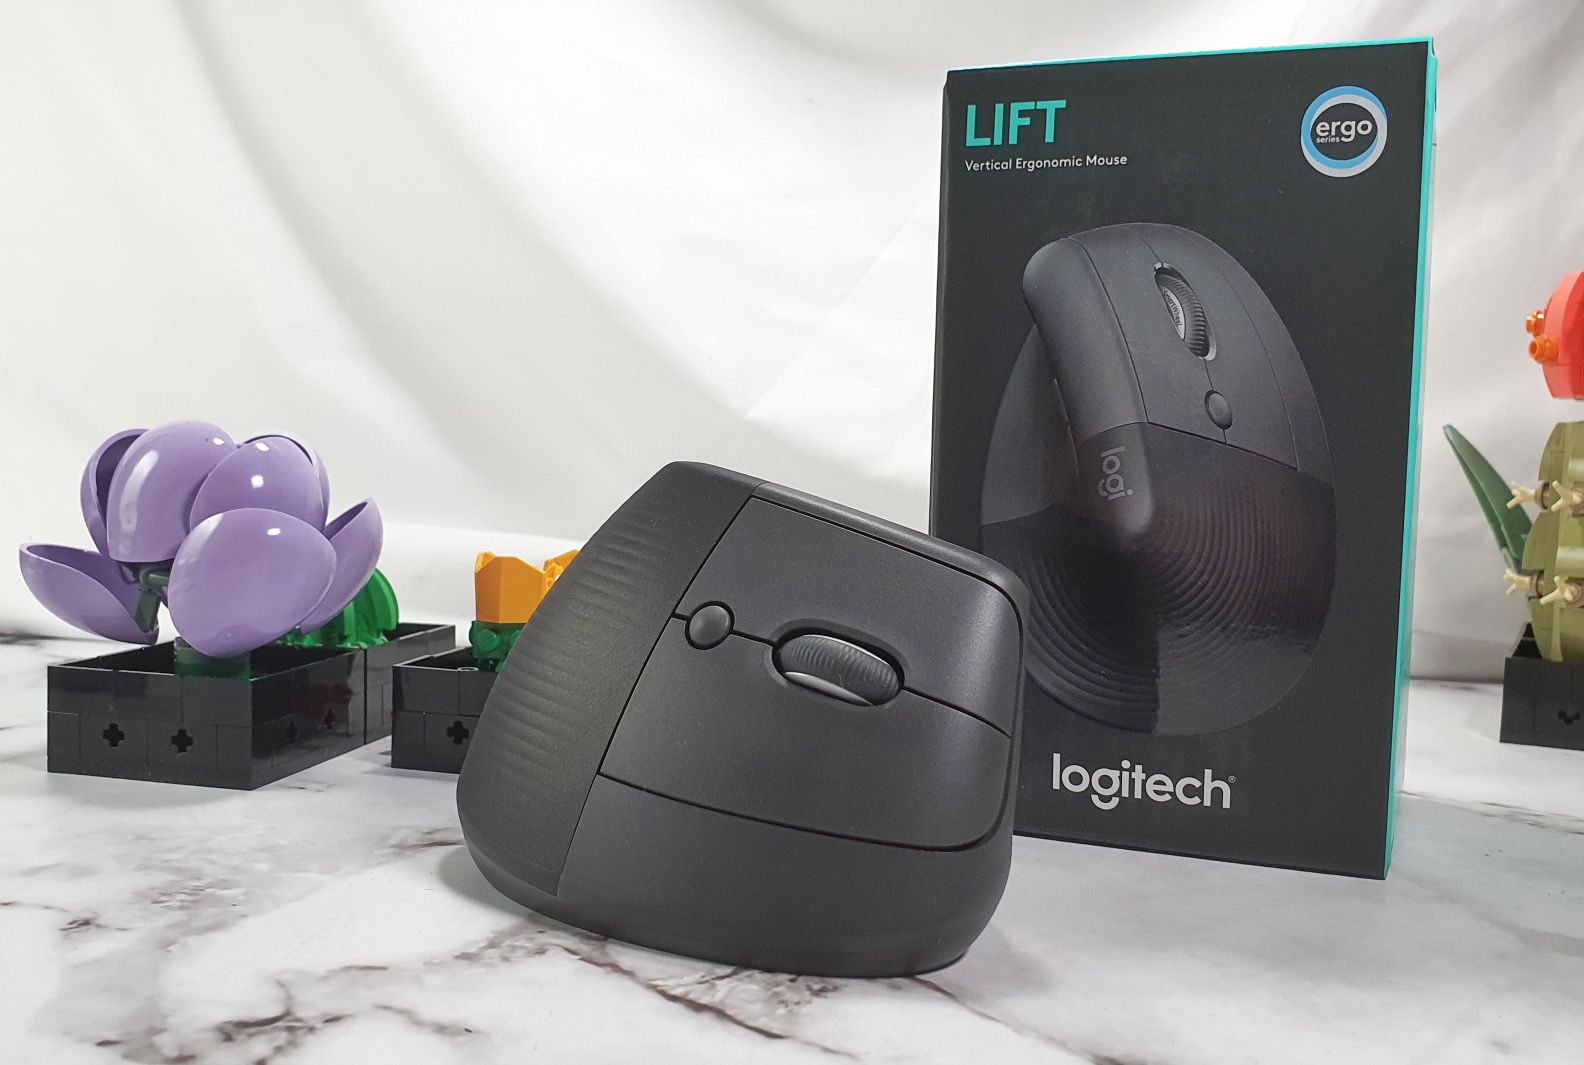 Logitech Lift review